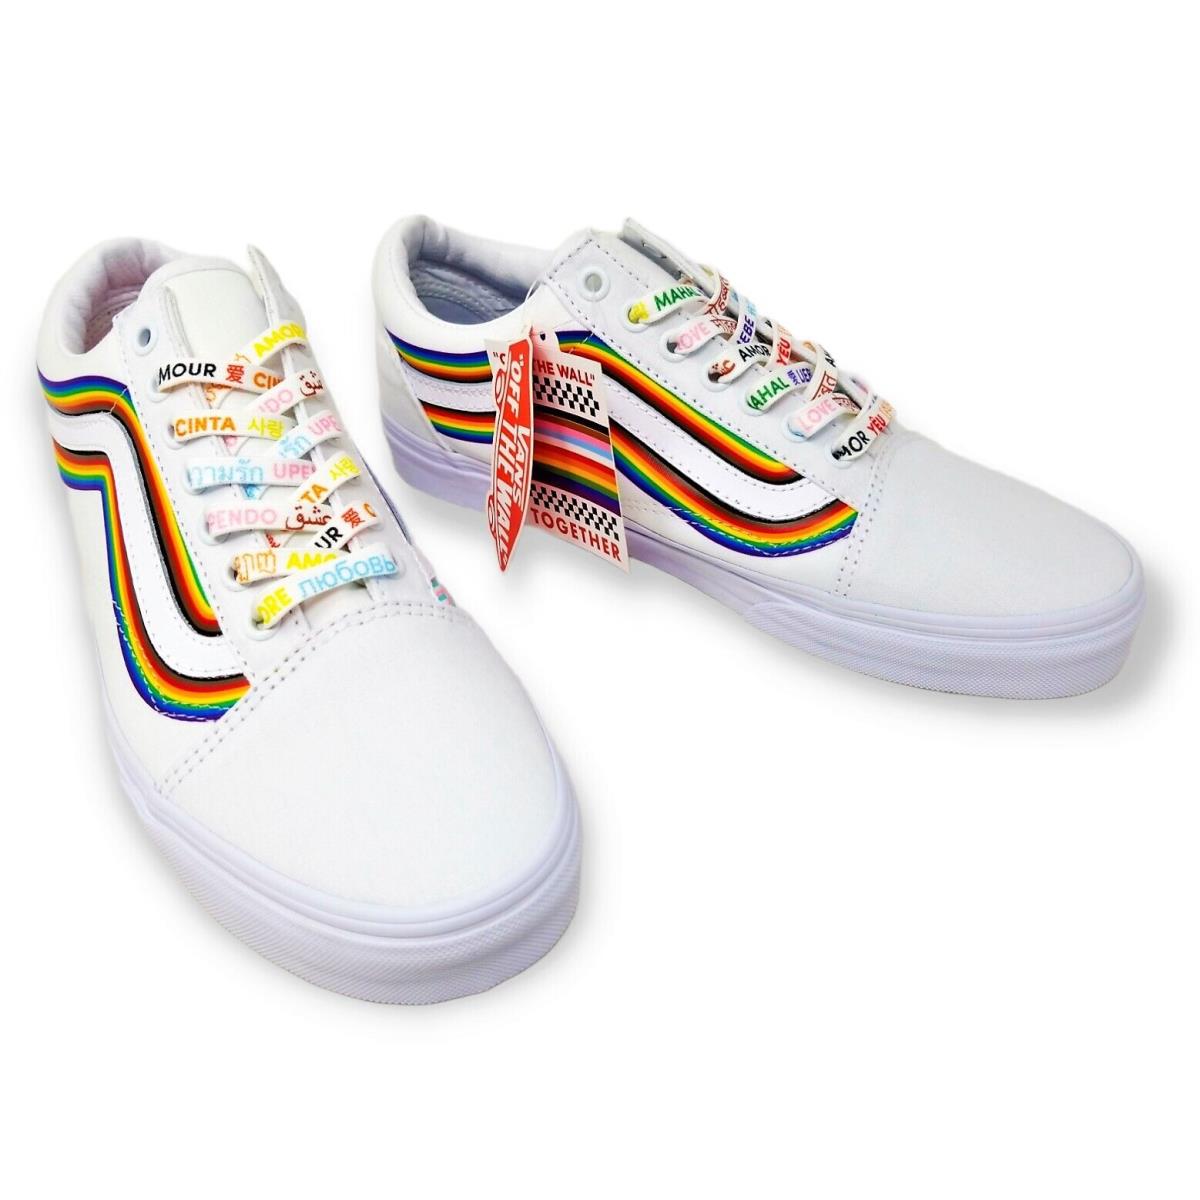 Vans - Old Skool - Pride Rainbow Skate Sneaker - White / Rainbow / True White